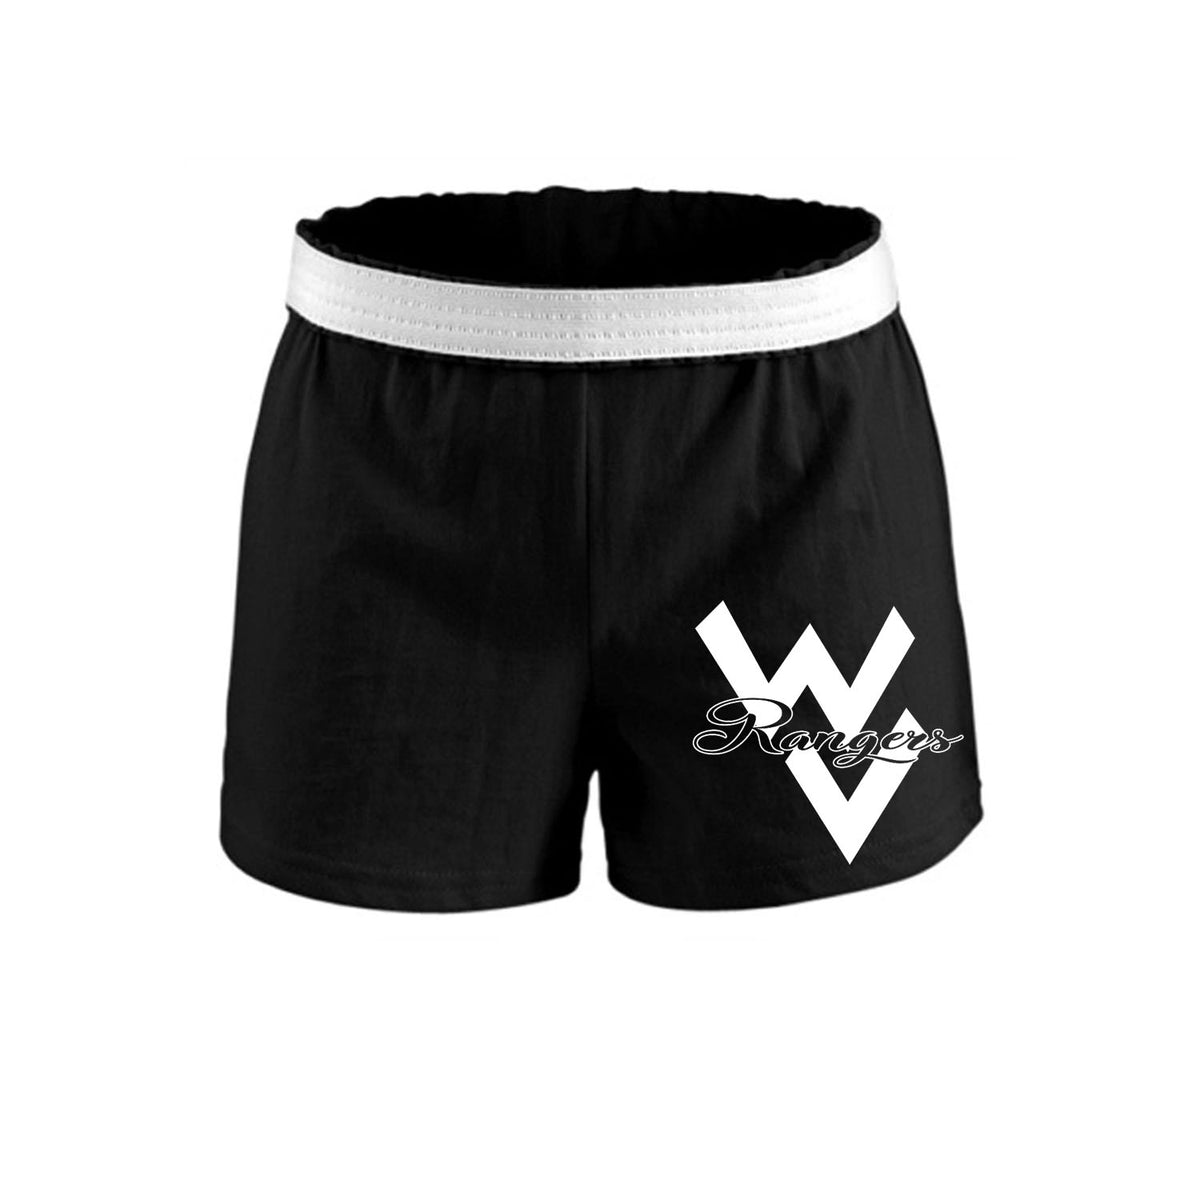 Wallkill Cheer Design 1 Shorts